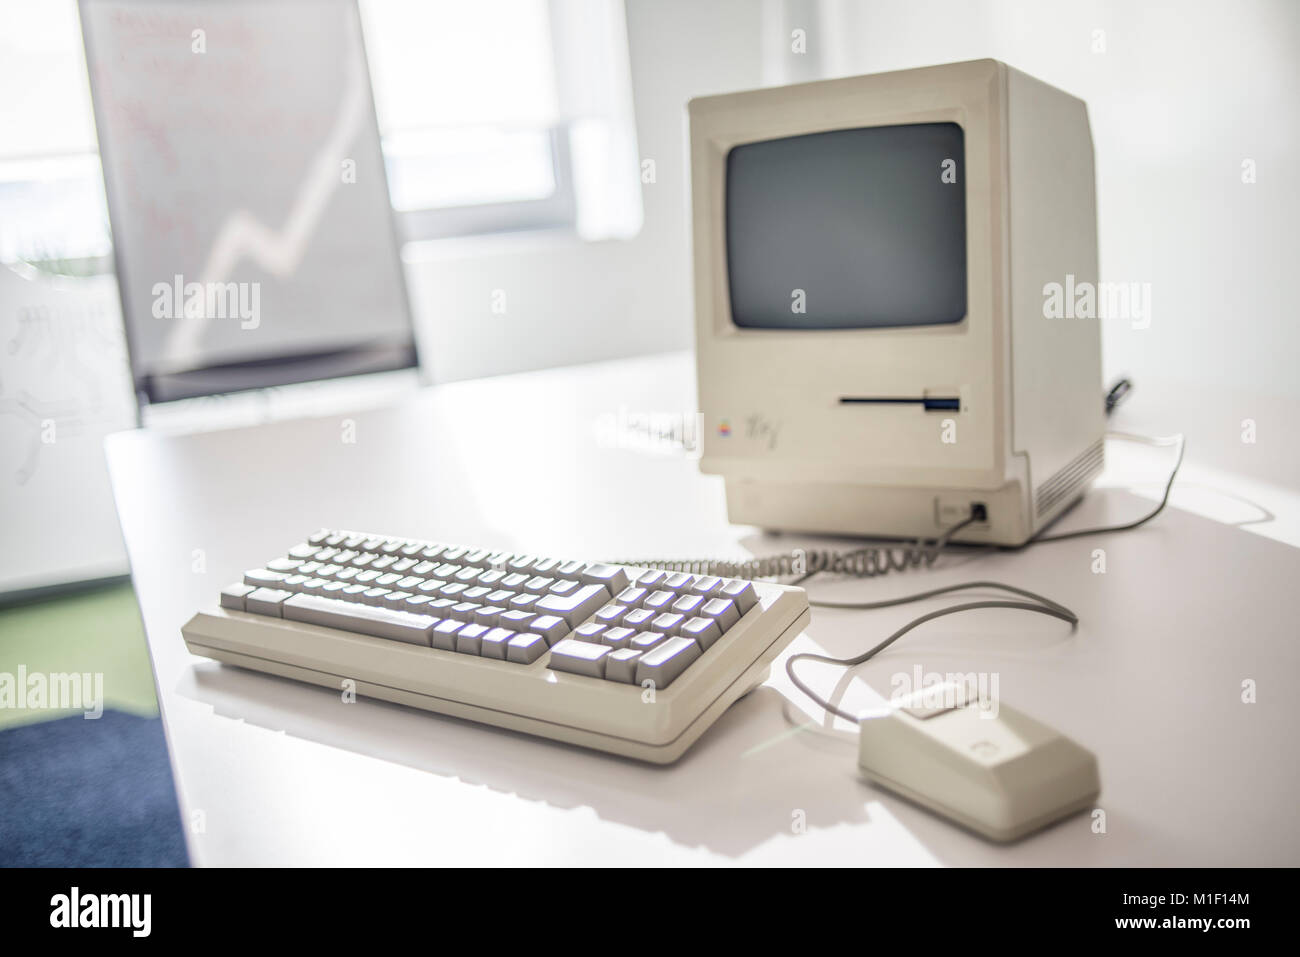 Macintosh 128K, firmada por Steve Wozniak, fecha de estreno de enero de 1984, expuesta en el Museo de Apple MacPaw ucraniano en Kiev, Ucrania, el 26 de enero de 2017. Desarrollador ucraniano MacPaw ha inaugurado el museo de hardware de Apple en la oficina de la compañía en Kiev. La colección tiene más de 70 modelos de Macintosh original data de 1981 a 2017. Foto de stock